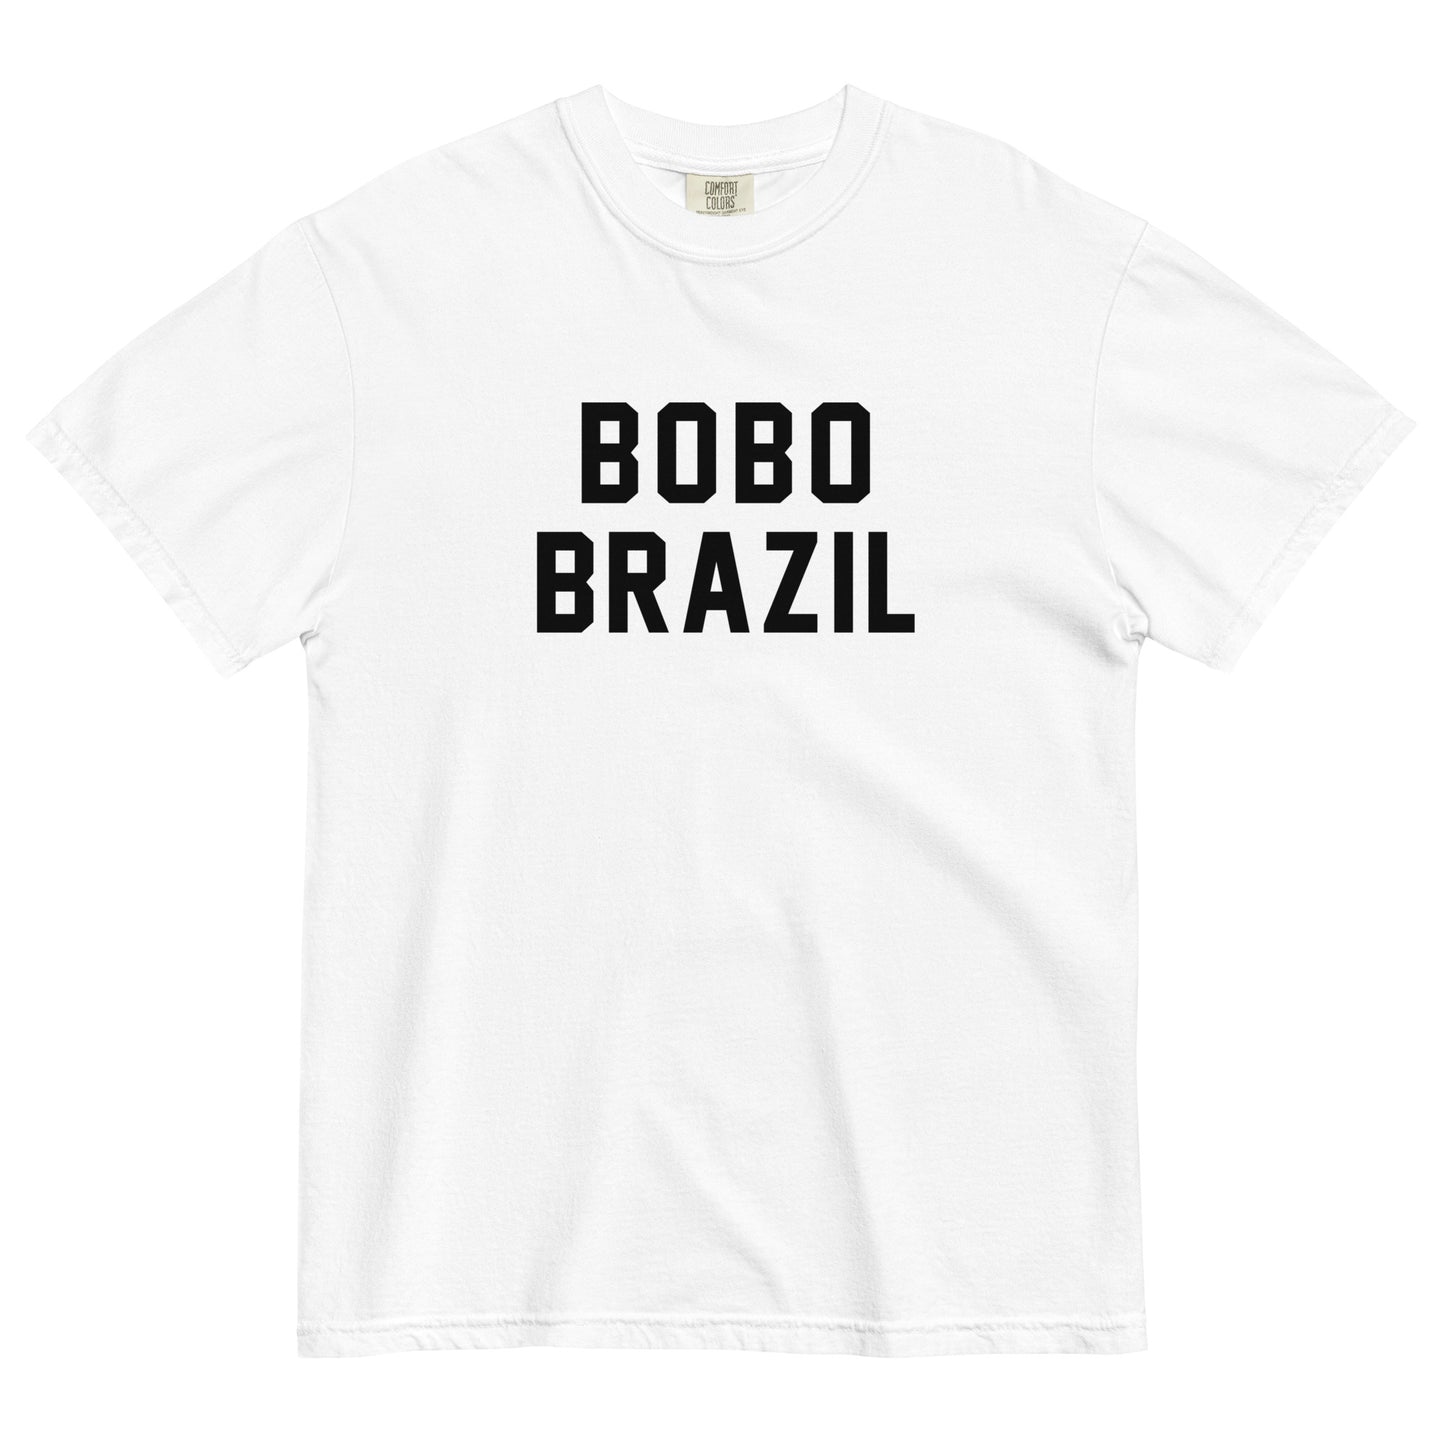 BOBO BRAZIL